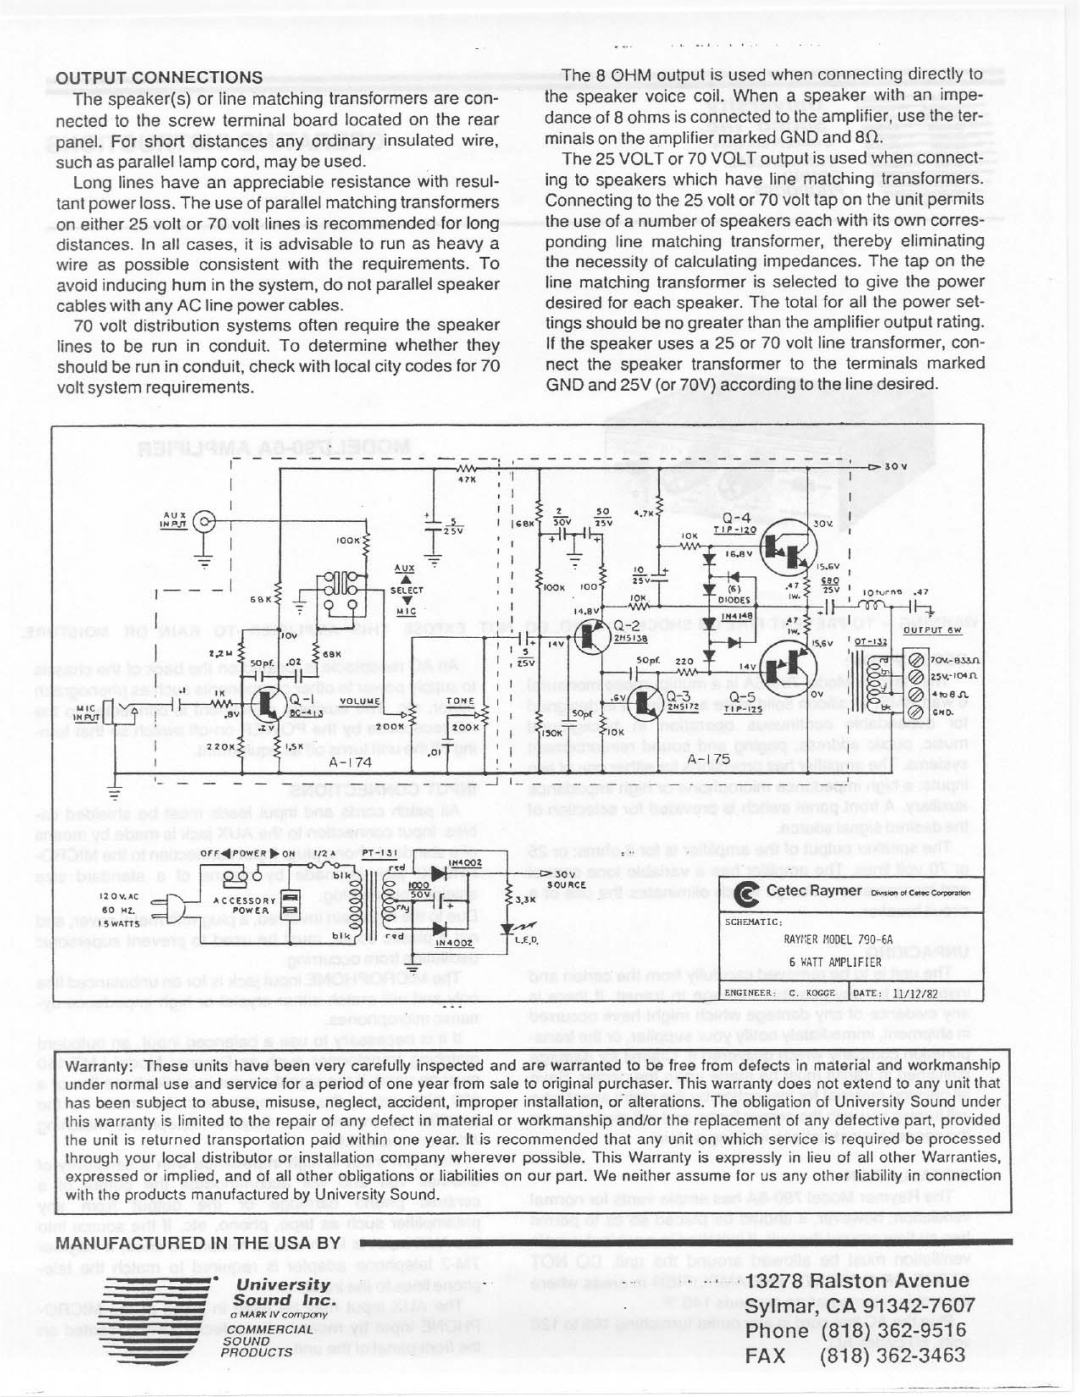 Telex 1790-6A manual 